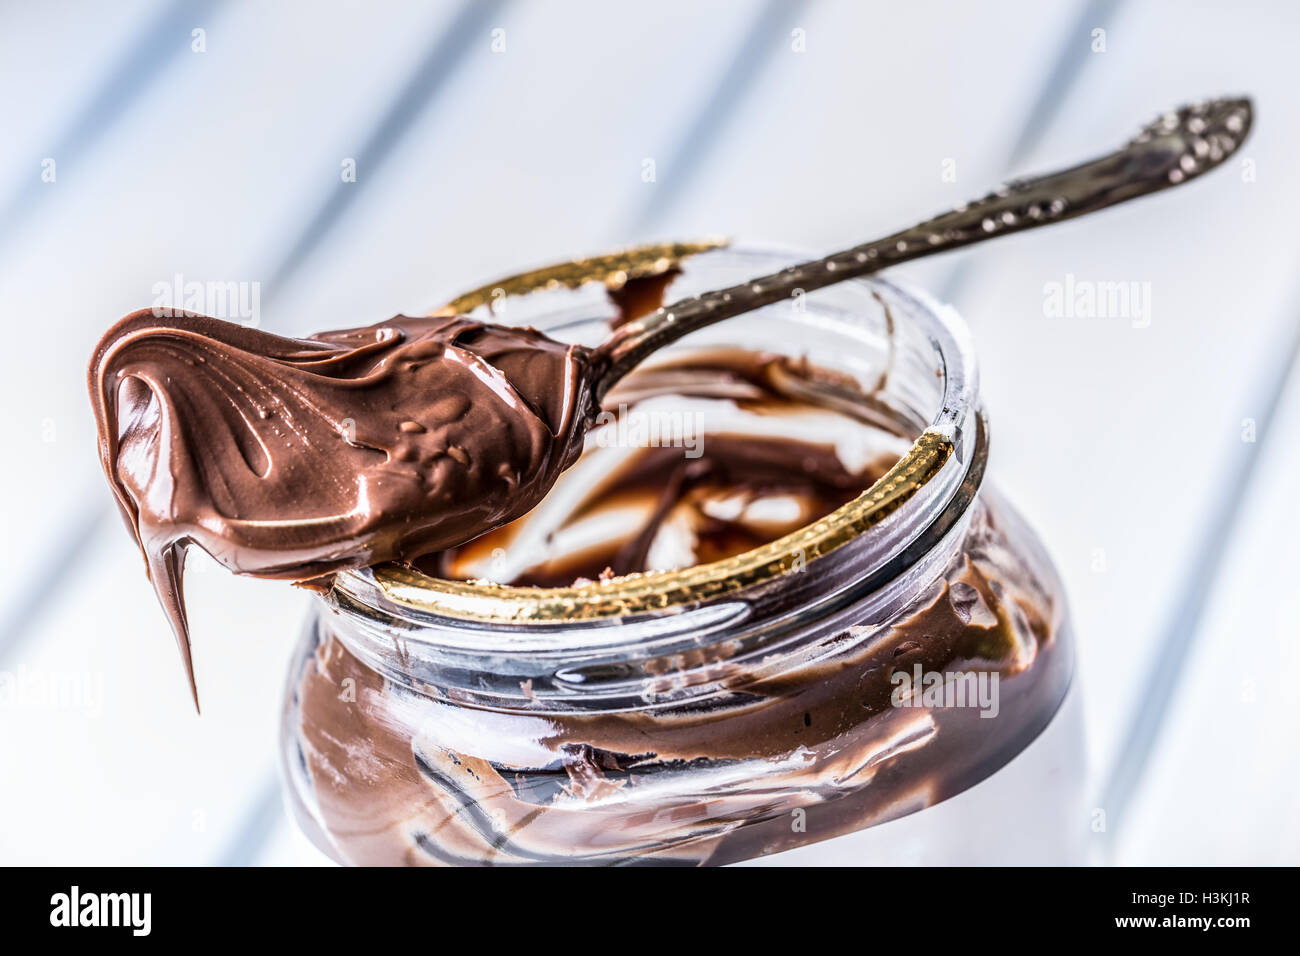 Chocolate spread in spoon. A jar of hazelnut chocolate spread. Stock Photo